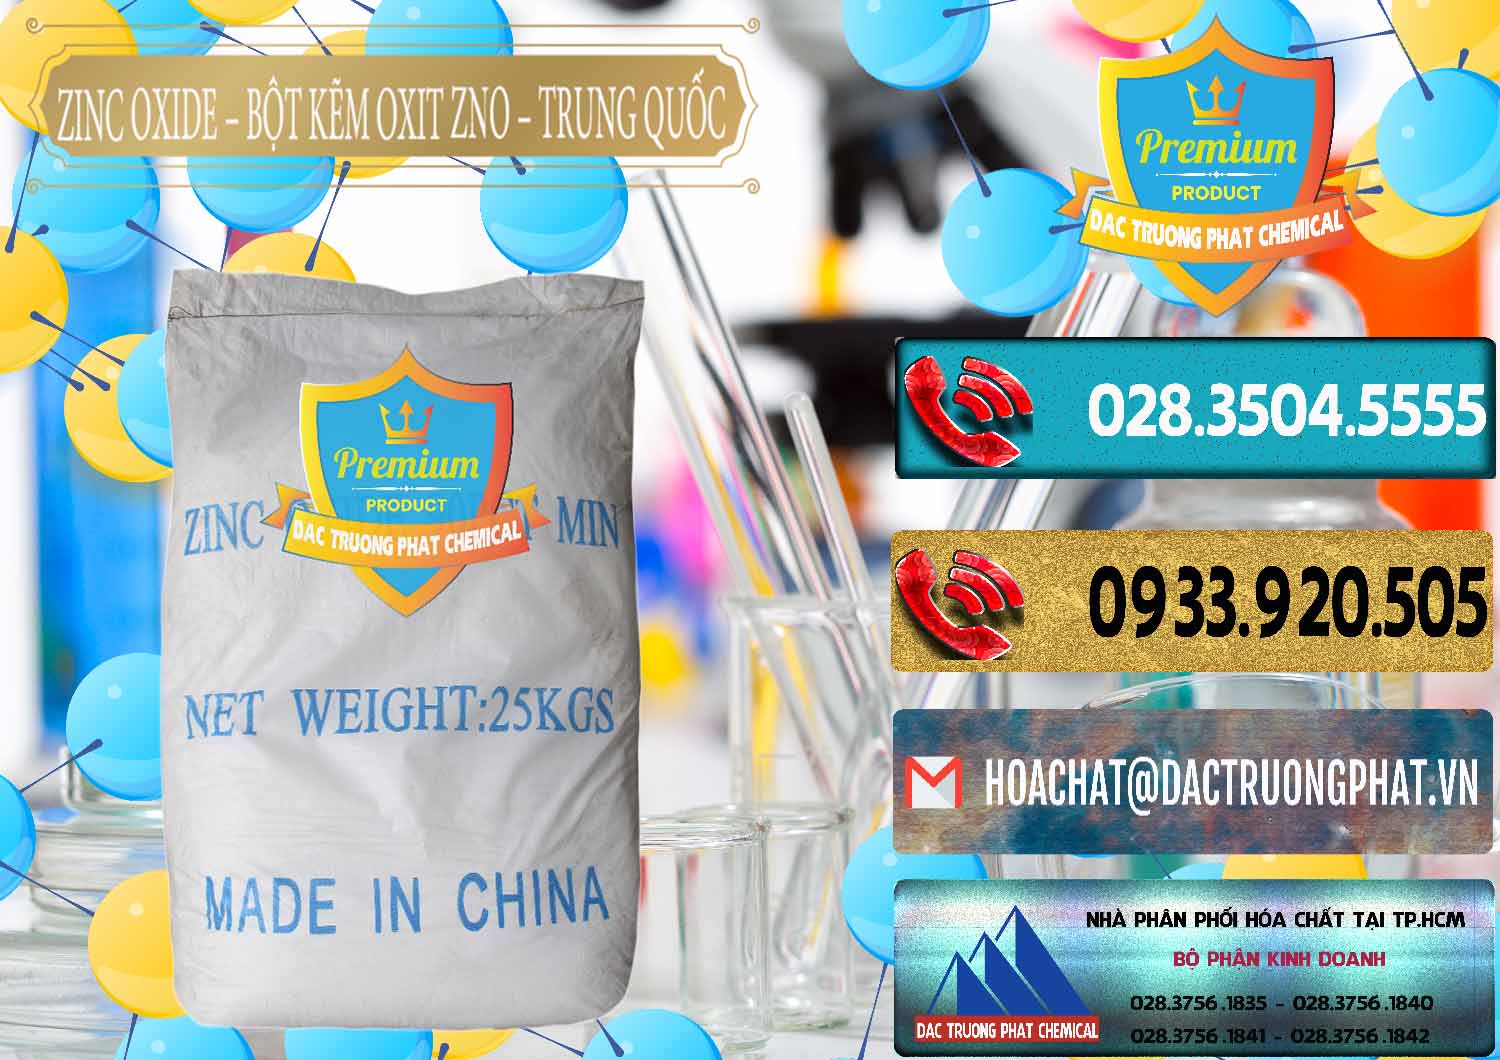 Công ty chuyên kinh doanh và bán Zinc Oxide - Bột Kẽm Oxit ZNO Trung Quốc China - 0182 - Cty chuyên nhập khẩu ( cung cấp ) hóa chất tại TP.HCM - hoachatdetnhuom.com